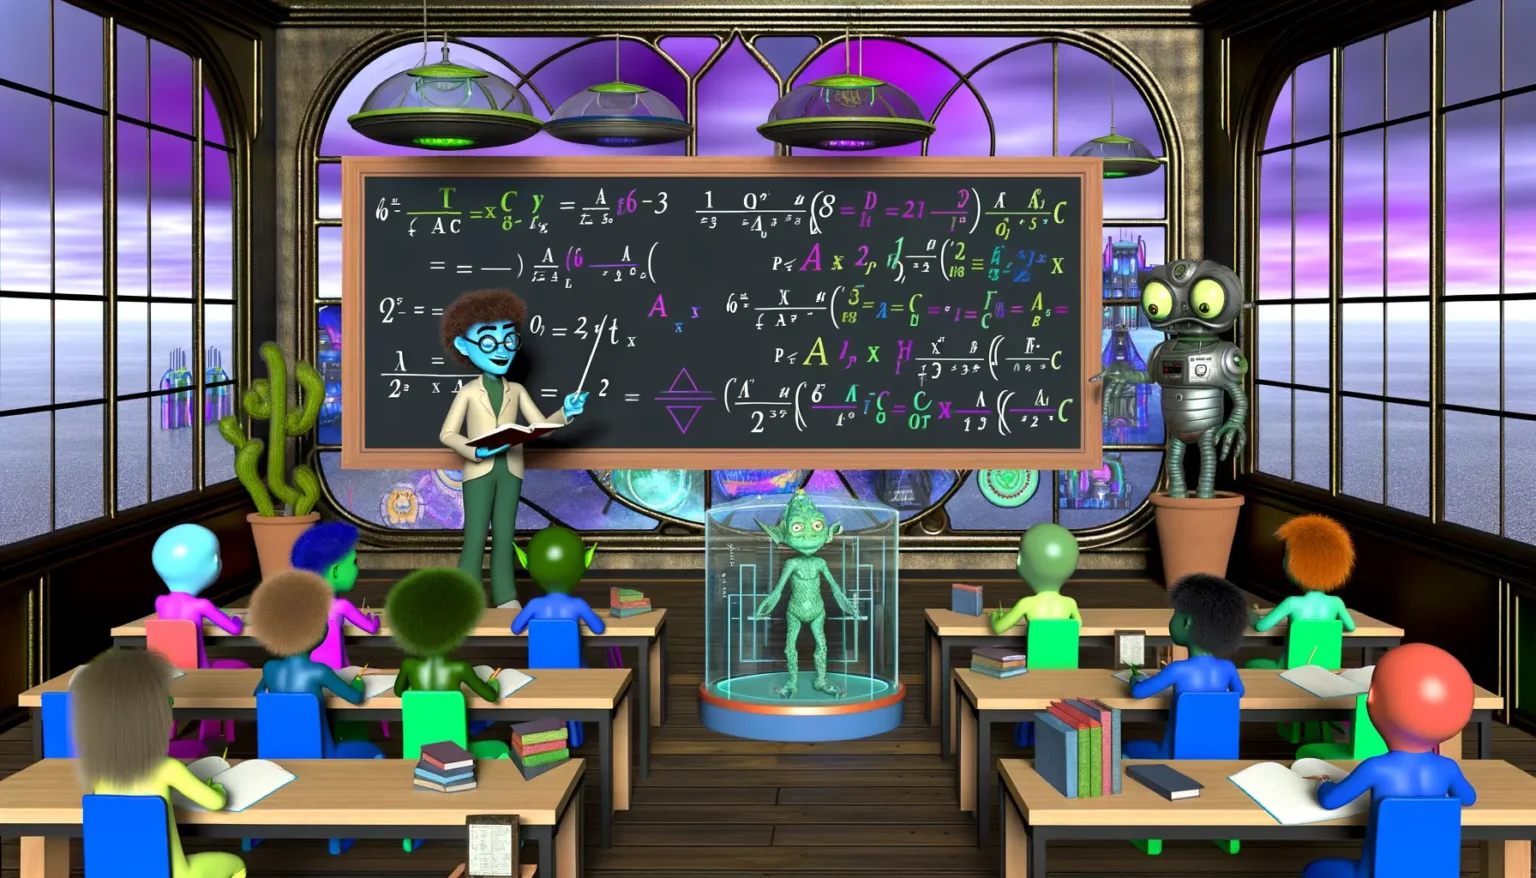 Ein Science-Fiction-Klassenzimmer mit bunten, humanoiden Alien-Schülern, die an Tischen sitzen und lernen, während eine Alien-Lehrerin vor einem großen Tafel mit komplexen mathematischen Formeln steht. Ein Roboter steht an der Seite und beobachtet die Klasse. In der Mitte ist ein holografisches Display eines grünen Aliens zu sehen. Draußen vor den großen Fenstern ist ein violett verfärbter Himmel und Strukturen, die wie ferne Städte aussehen.